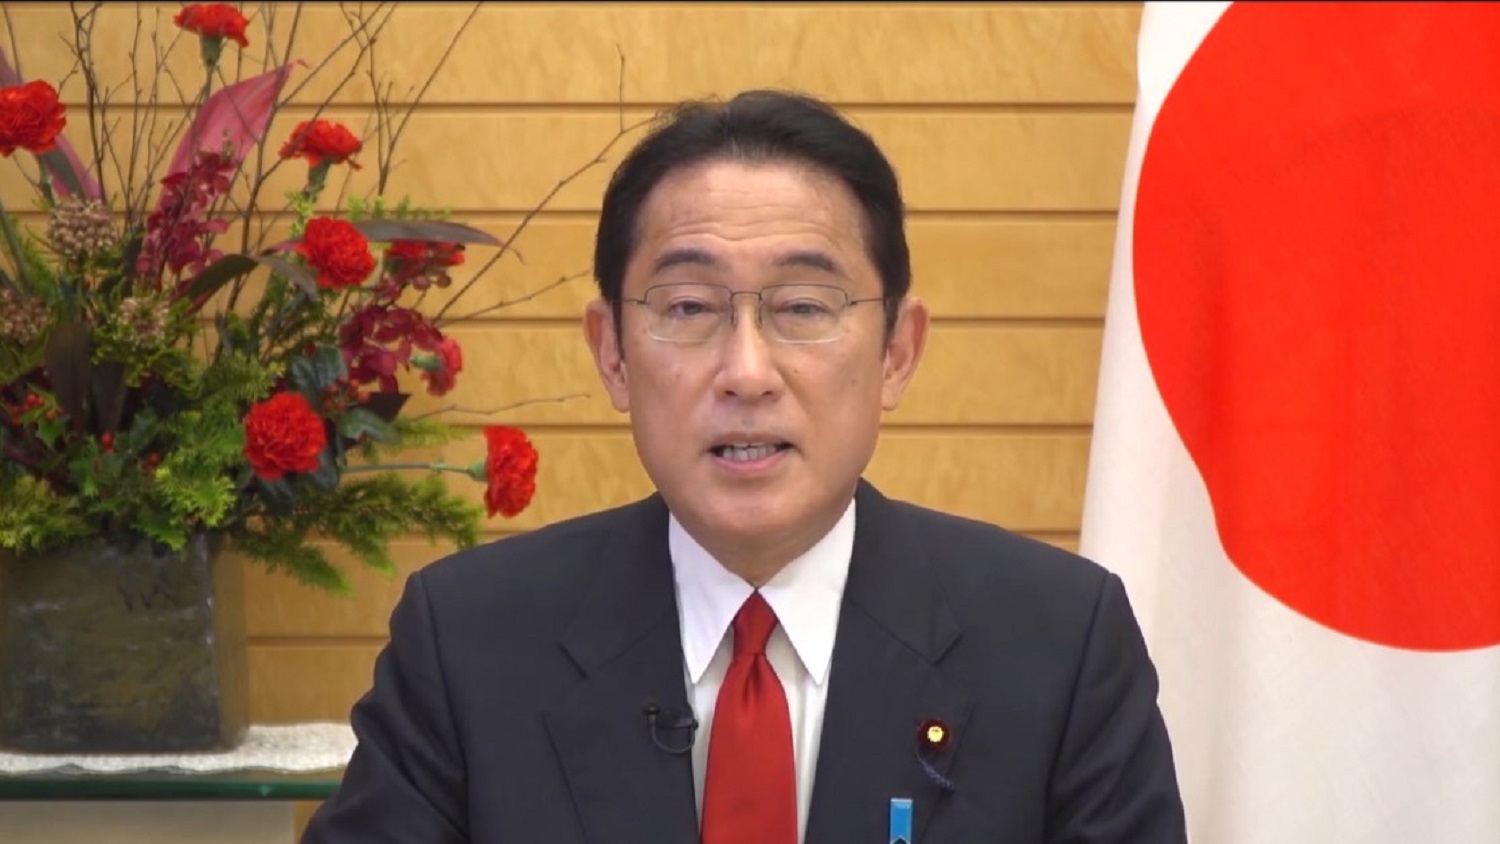 जन्मदर घटेकोमा जापानी प्रधानमन्त्रीको चिन्ता